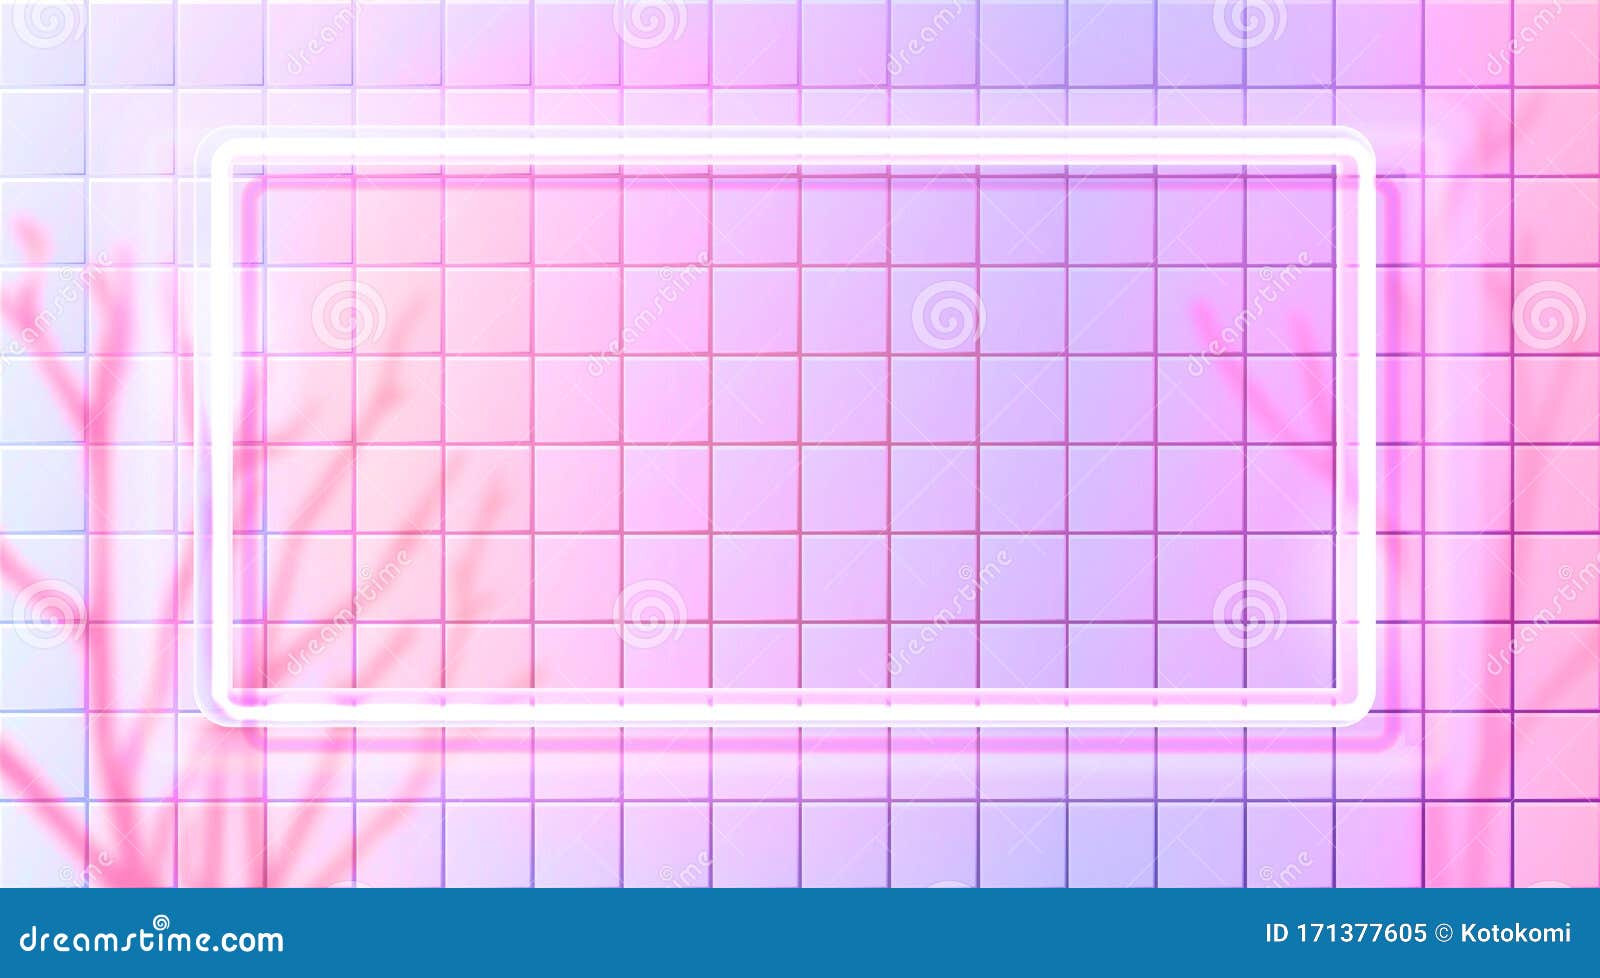 Có một tấm hình chữ nhật neon hồng rực rỡ trên tường gạch trắng đang đợi bạn khám phá. Màu sắc nổi bật sẽ chắc chắn thu hút mọi ánh nhìn và mở ra một không gian thú vị. Nhấp chuột ngay để khám phá hình ảnh này ngay bây giờ!